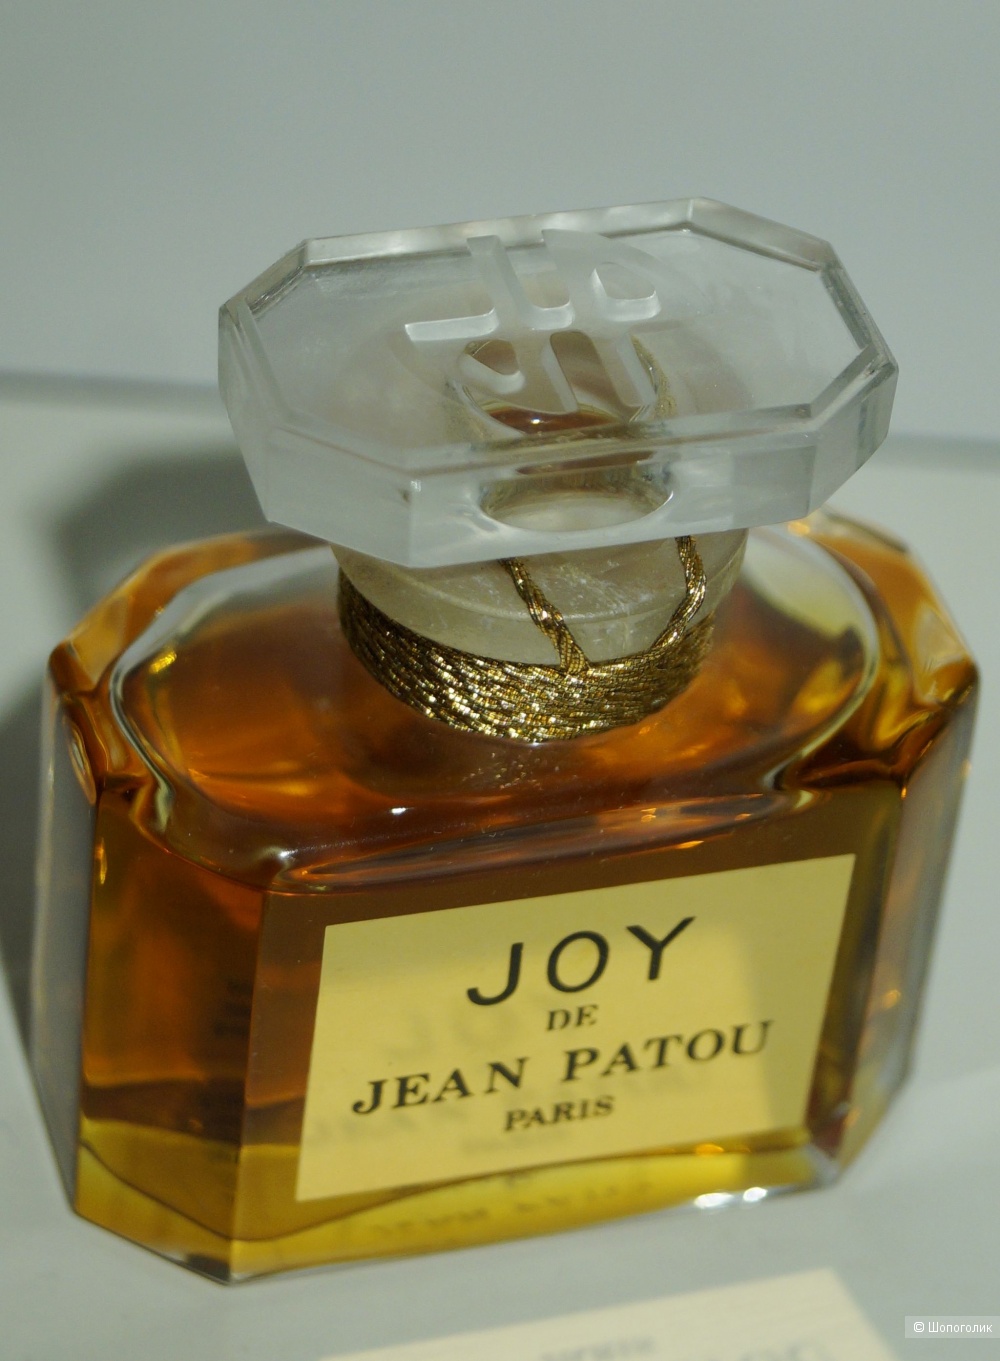 Joy de Jean Patou 15 мл